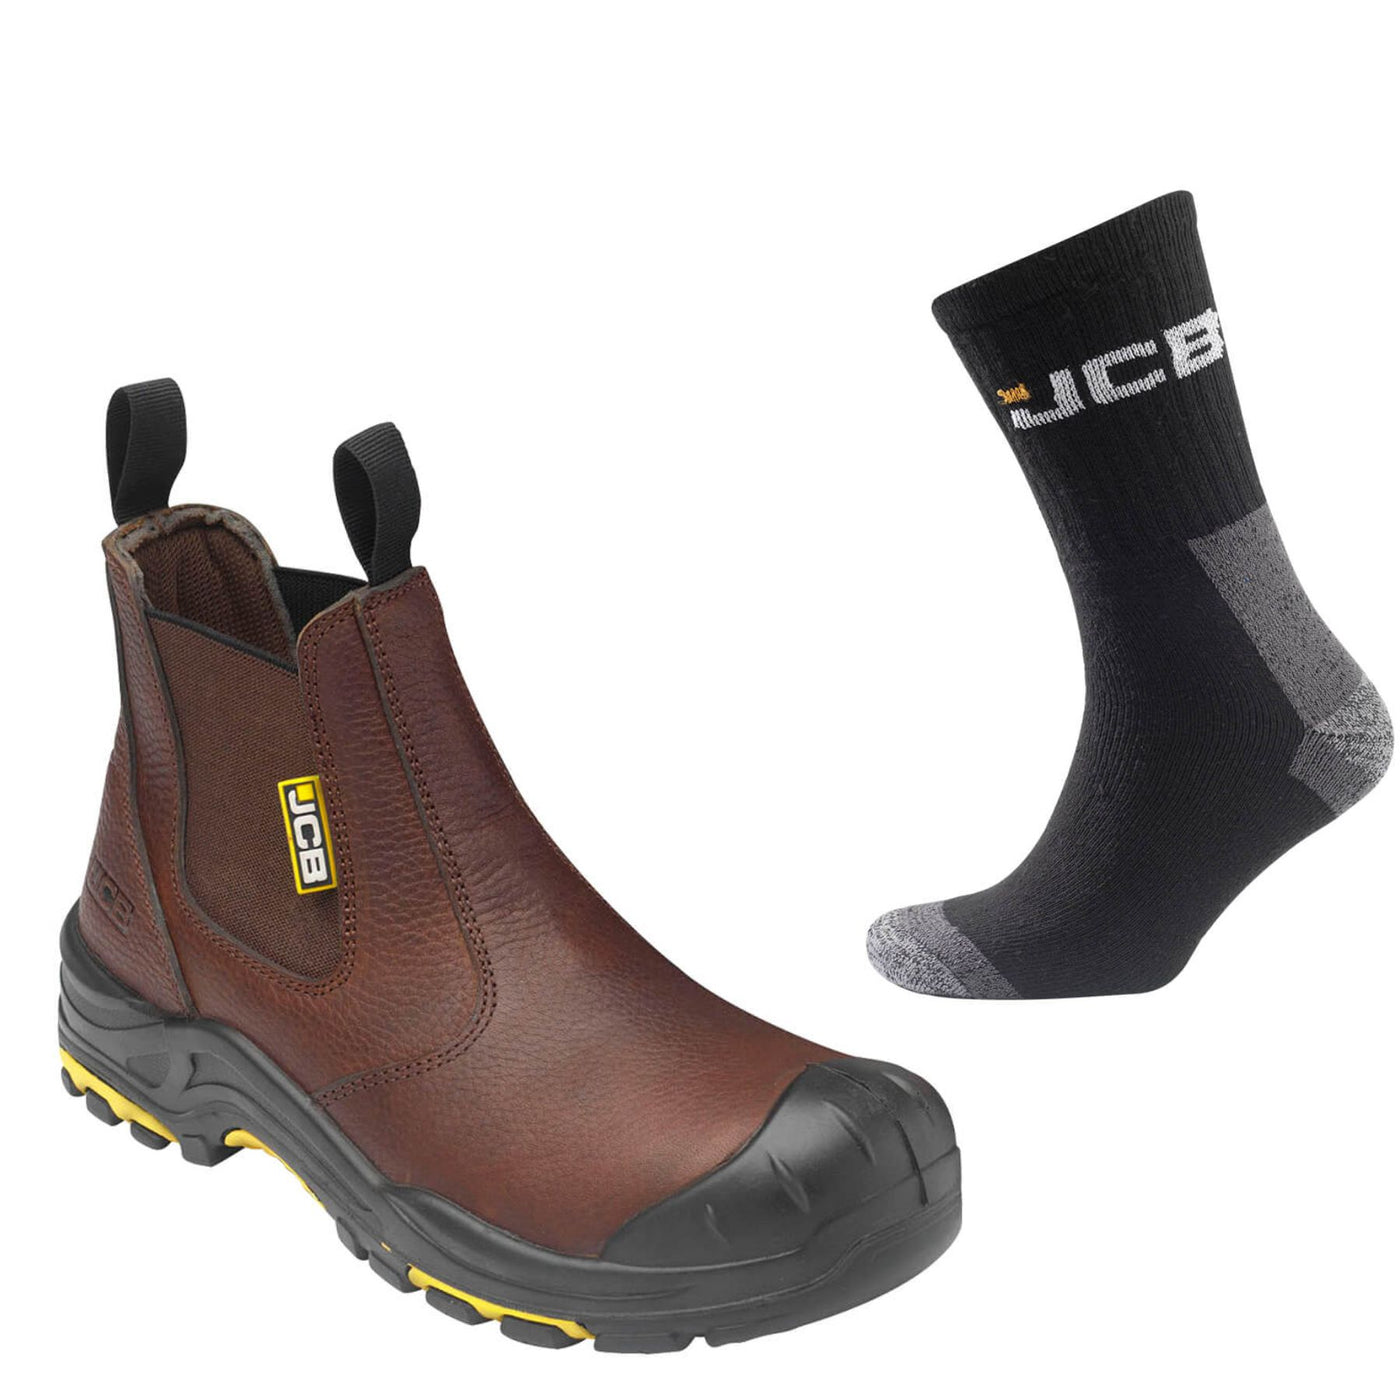 JCB Safety Dealer Boots Special Offer Pack - JCB Safety Dealer Boots + 3 Pairs Work Socks